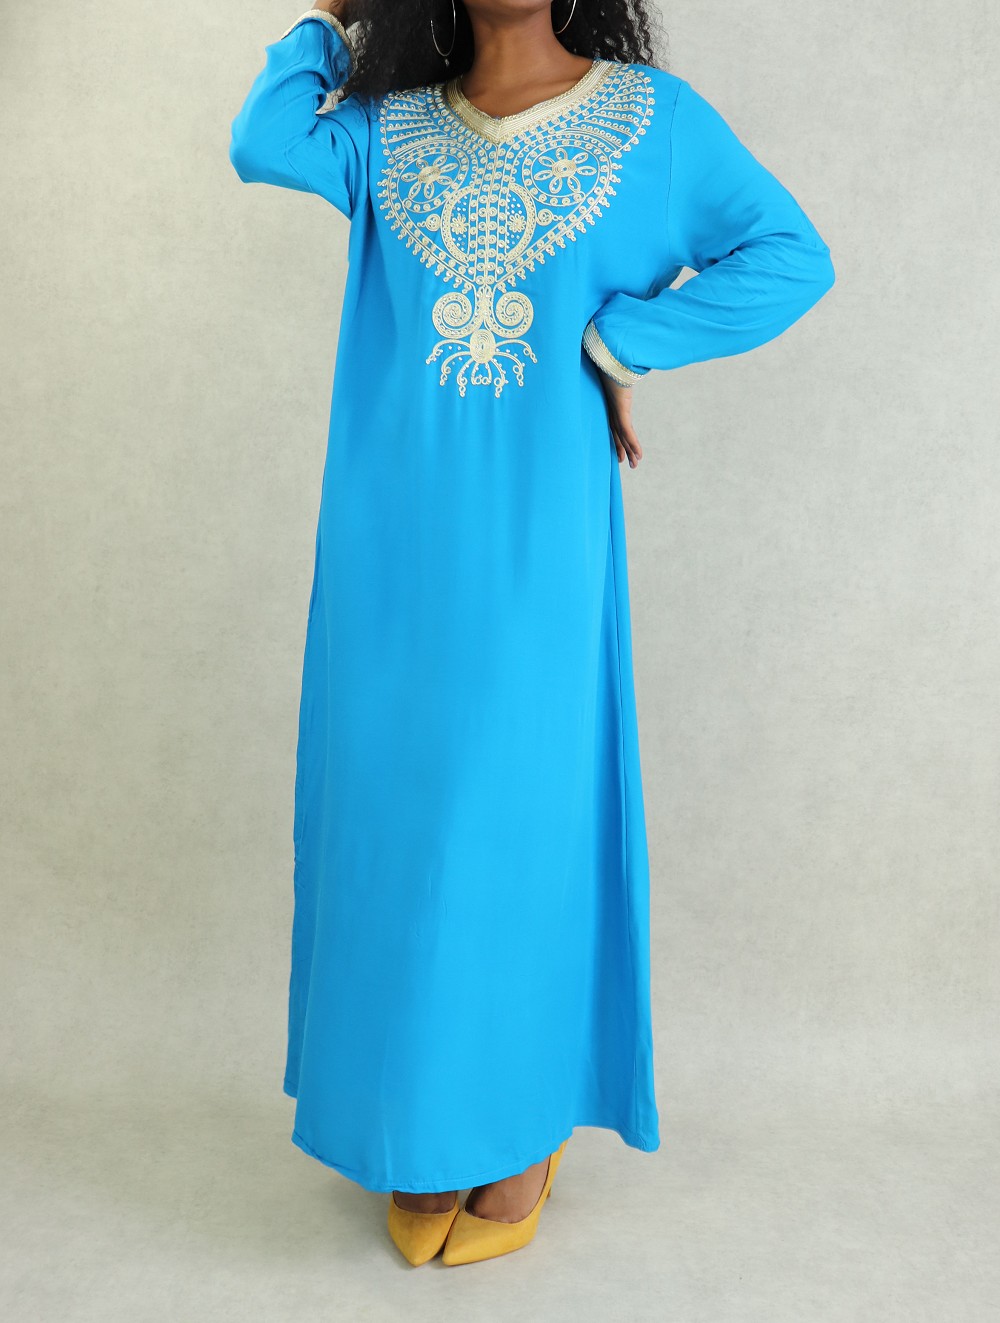 https://www.albustane.com/images/33422-robe-avec-decorations-bleu-turquoise-1.jpg